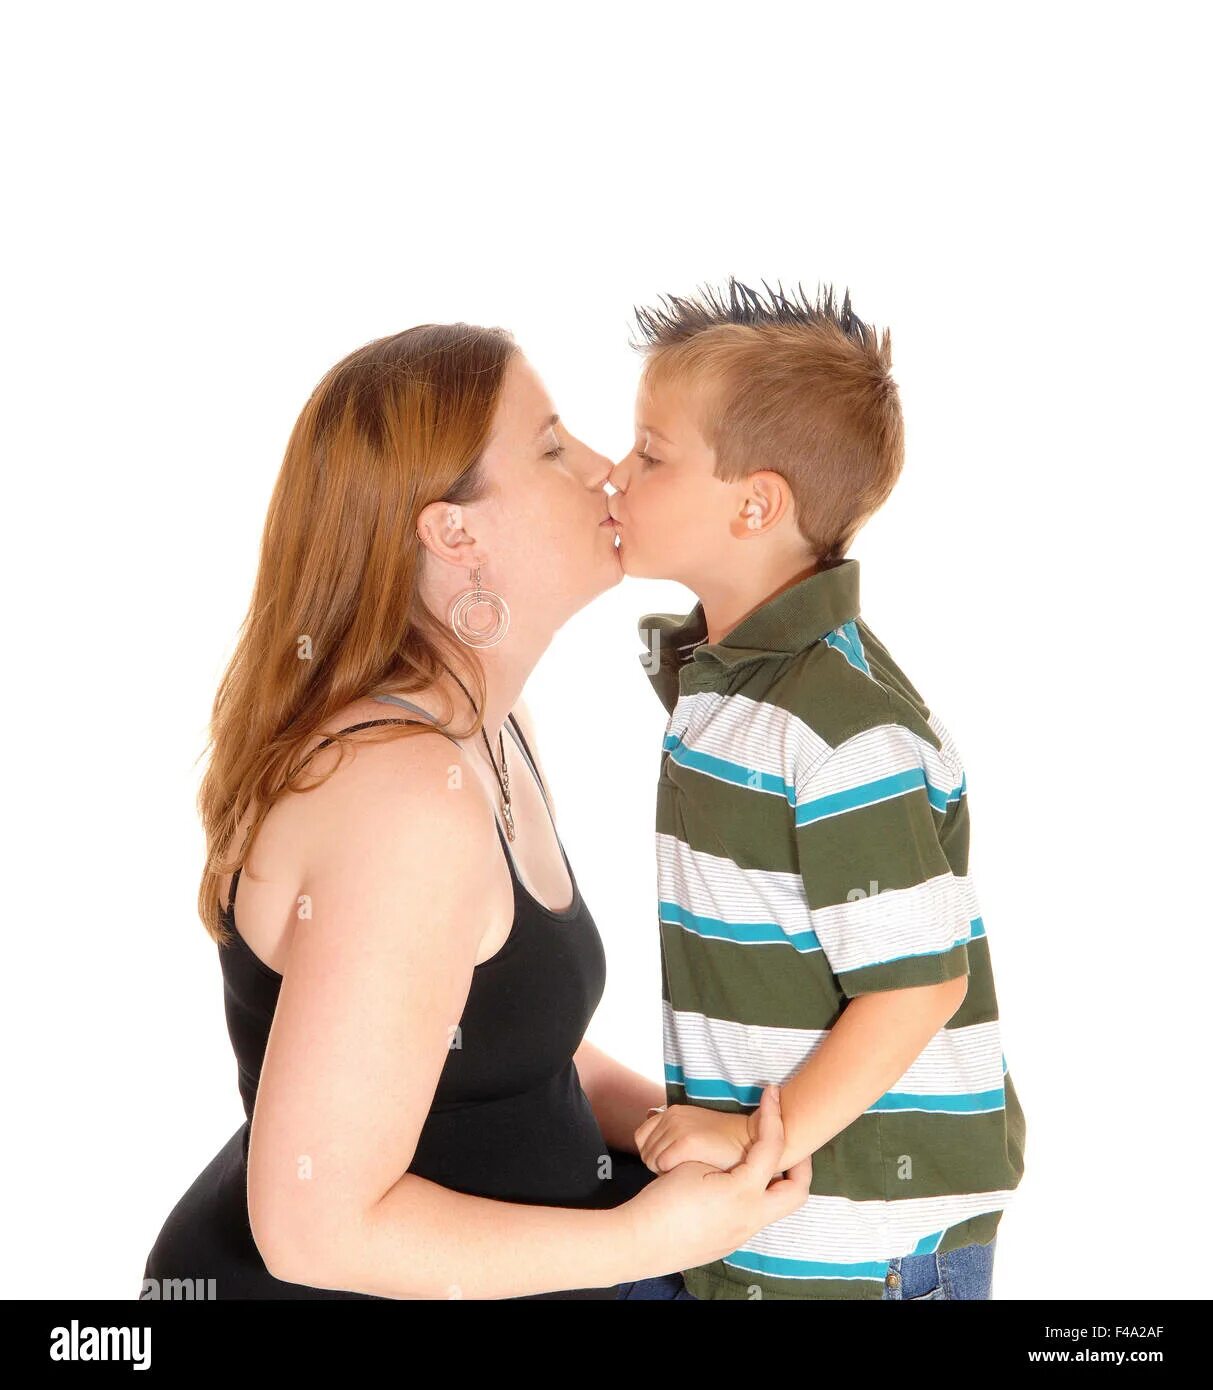 Мом son Kiss. Мальчик целует мать. Поцелуй матери и подростка. Мама целует сына. Мама учит сына целоваться